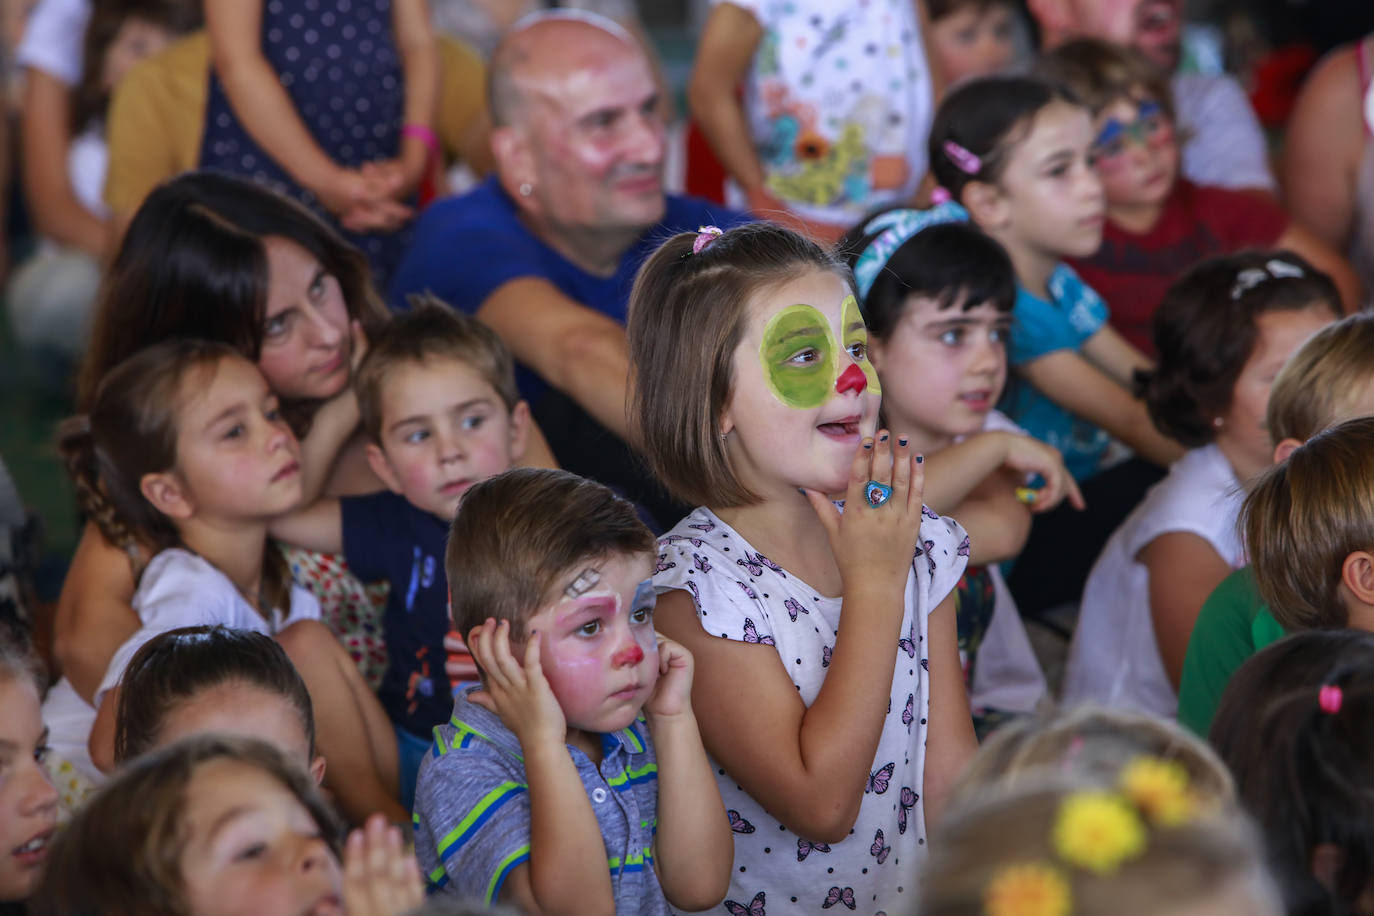 La cúpula del Buesa Arena ha acogido este este sábado una gran fiesta infantil al aire libre organizada por la Corporación Mondragón como aperitivo de su espectáculo 'Humanity at Music', que comienza a las 18.00 en el interior del pabellón.